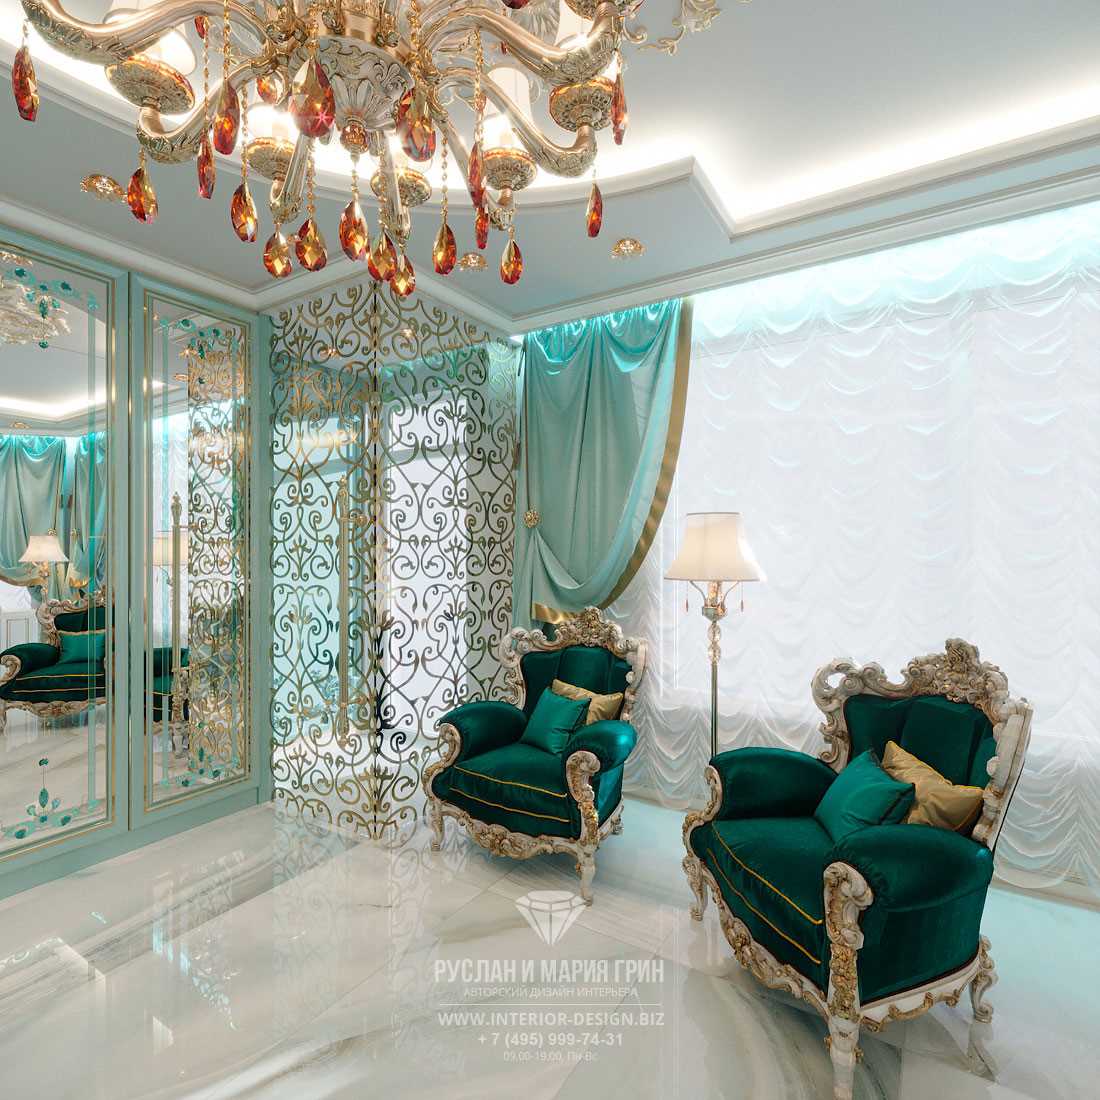 Дизайн интерьера салона красоты: создание роскоши и уюта для клиентов